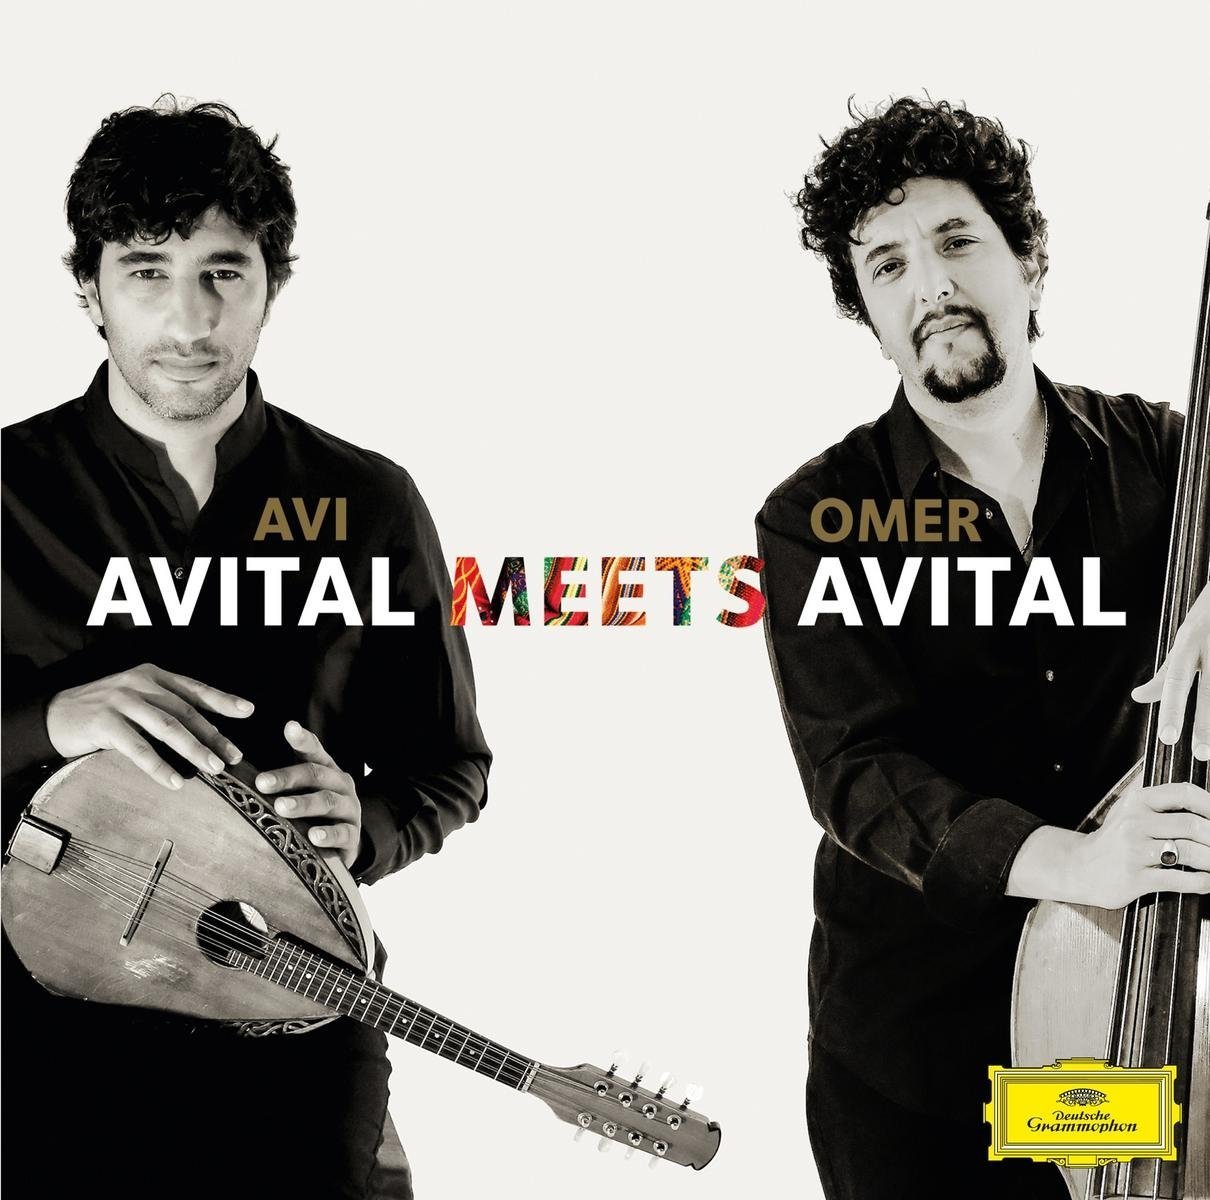 Avital Meets Avital | Omer Avital, Avi Avital